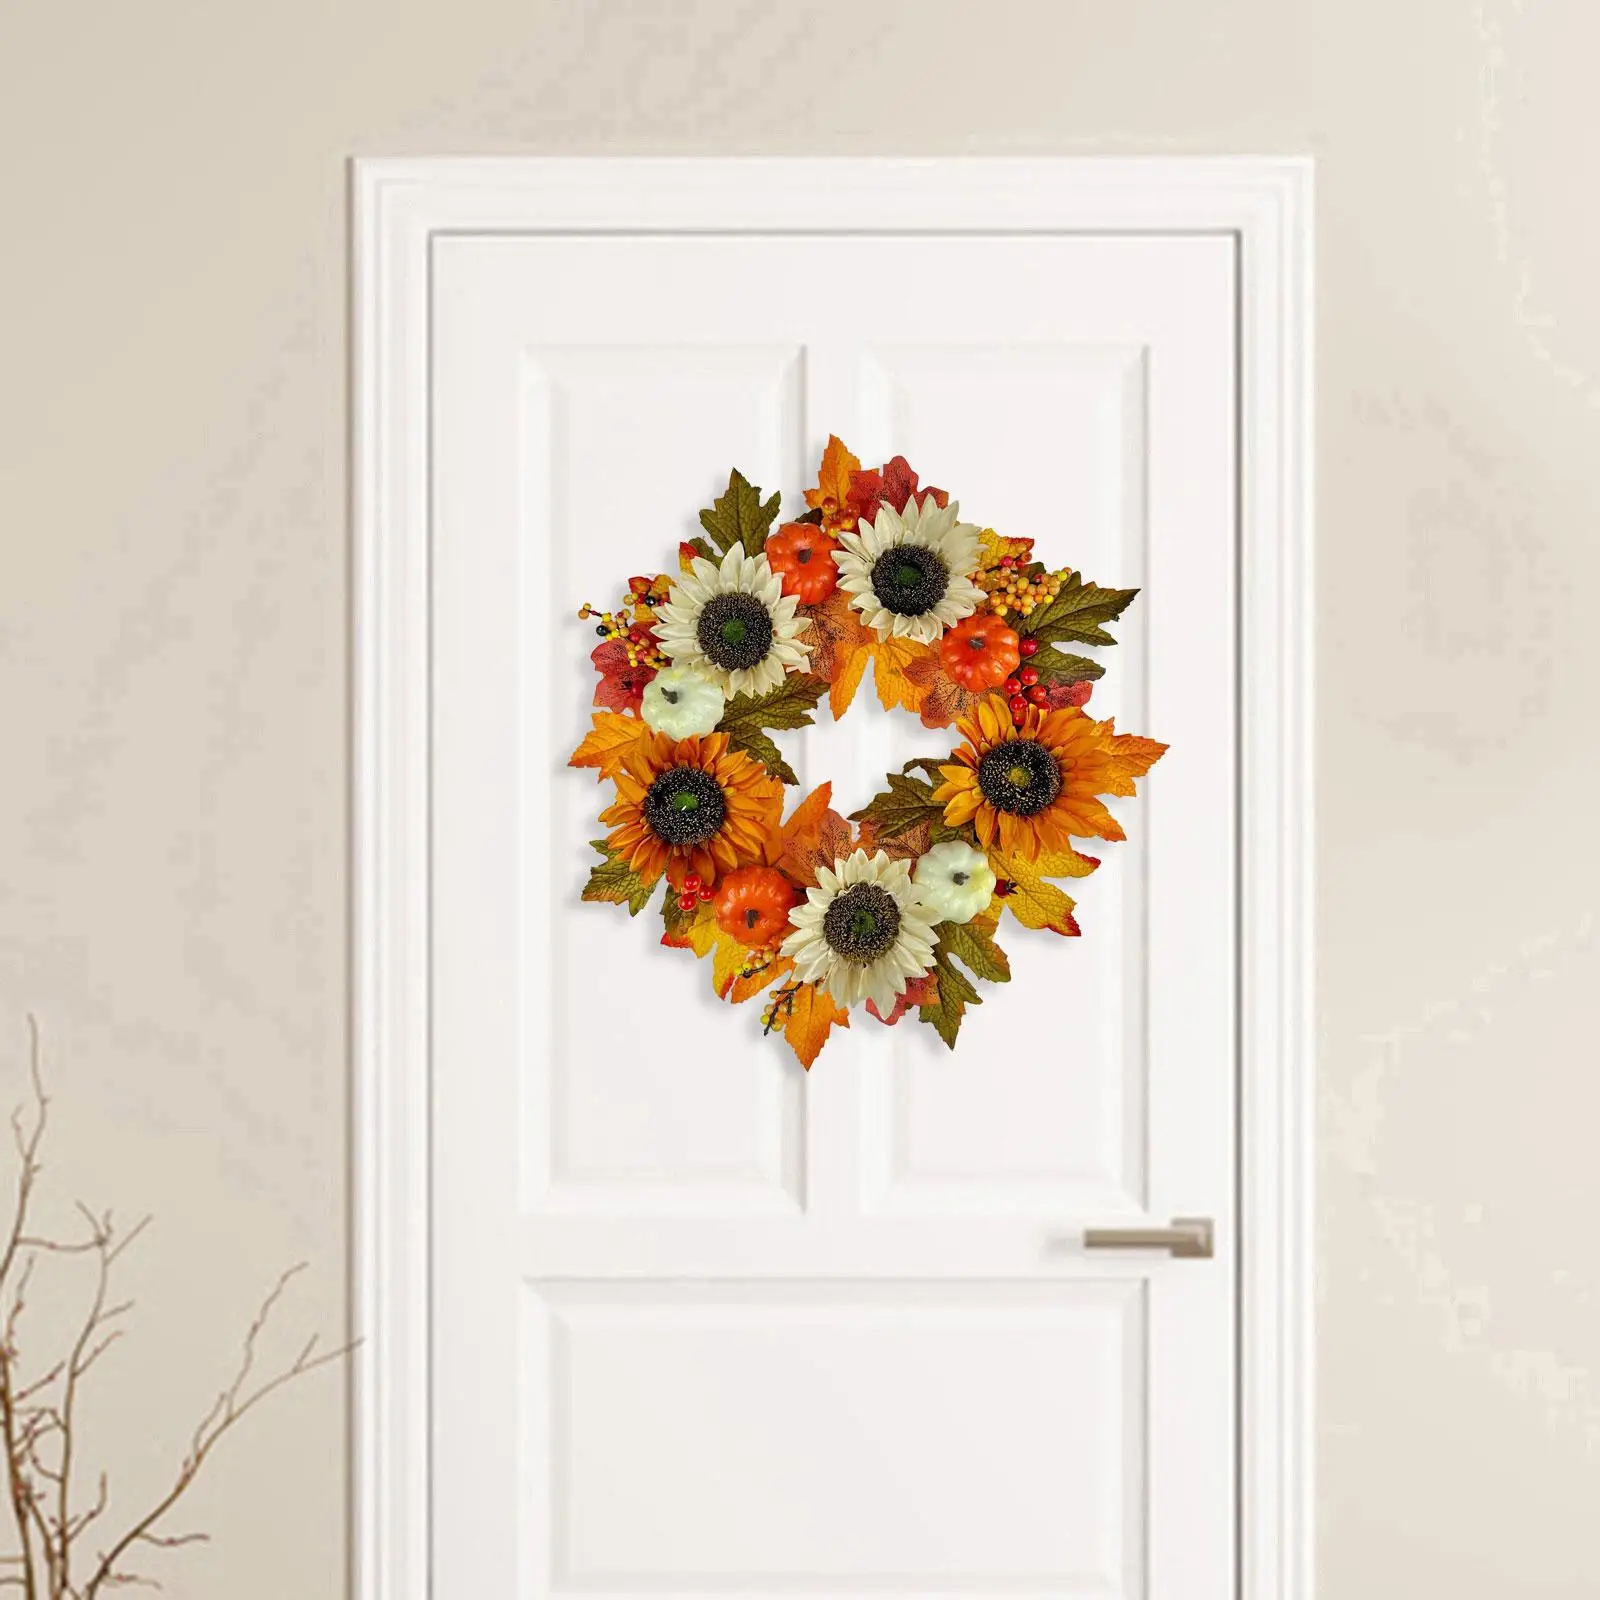 Тыквенный Кленовый Осенний венок для сбора урожая, Цветочный Венок, Дверной венок, Осенний Венок для новоселья, стена, Входная дверь, Окно, внутри и снаружи